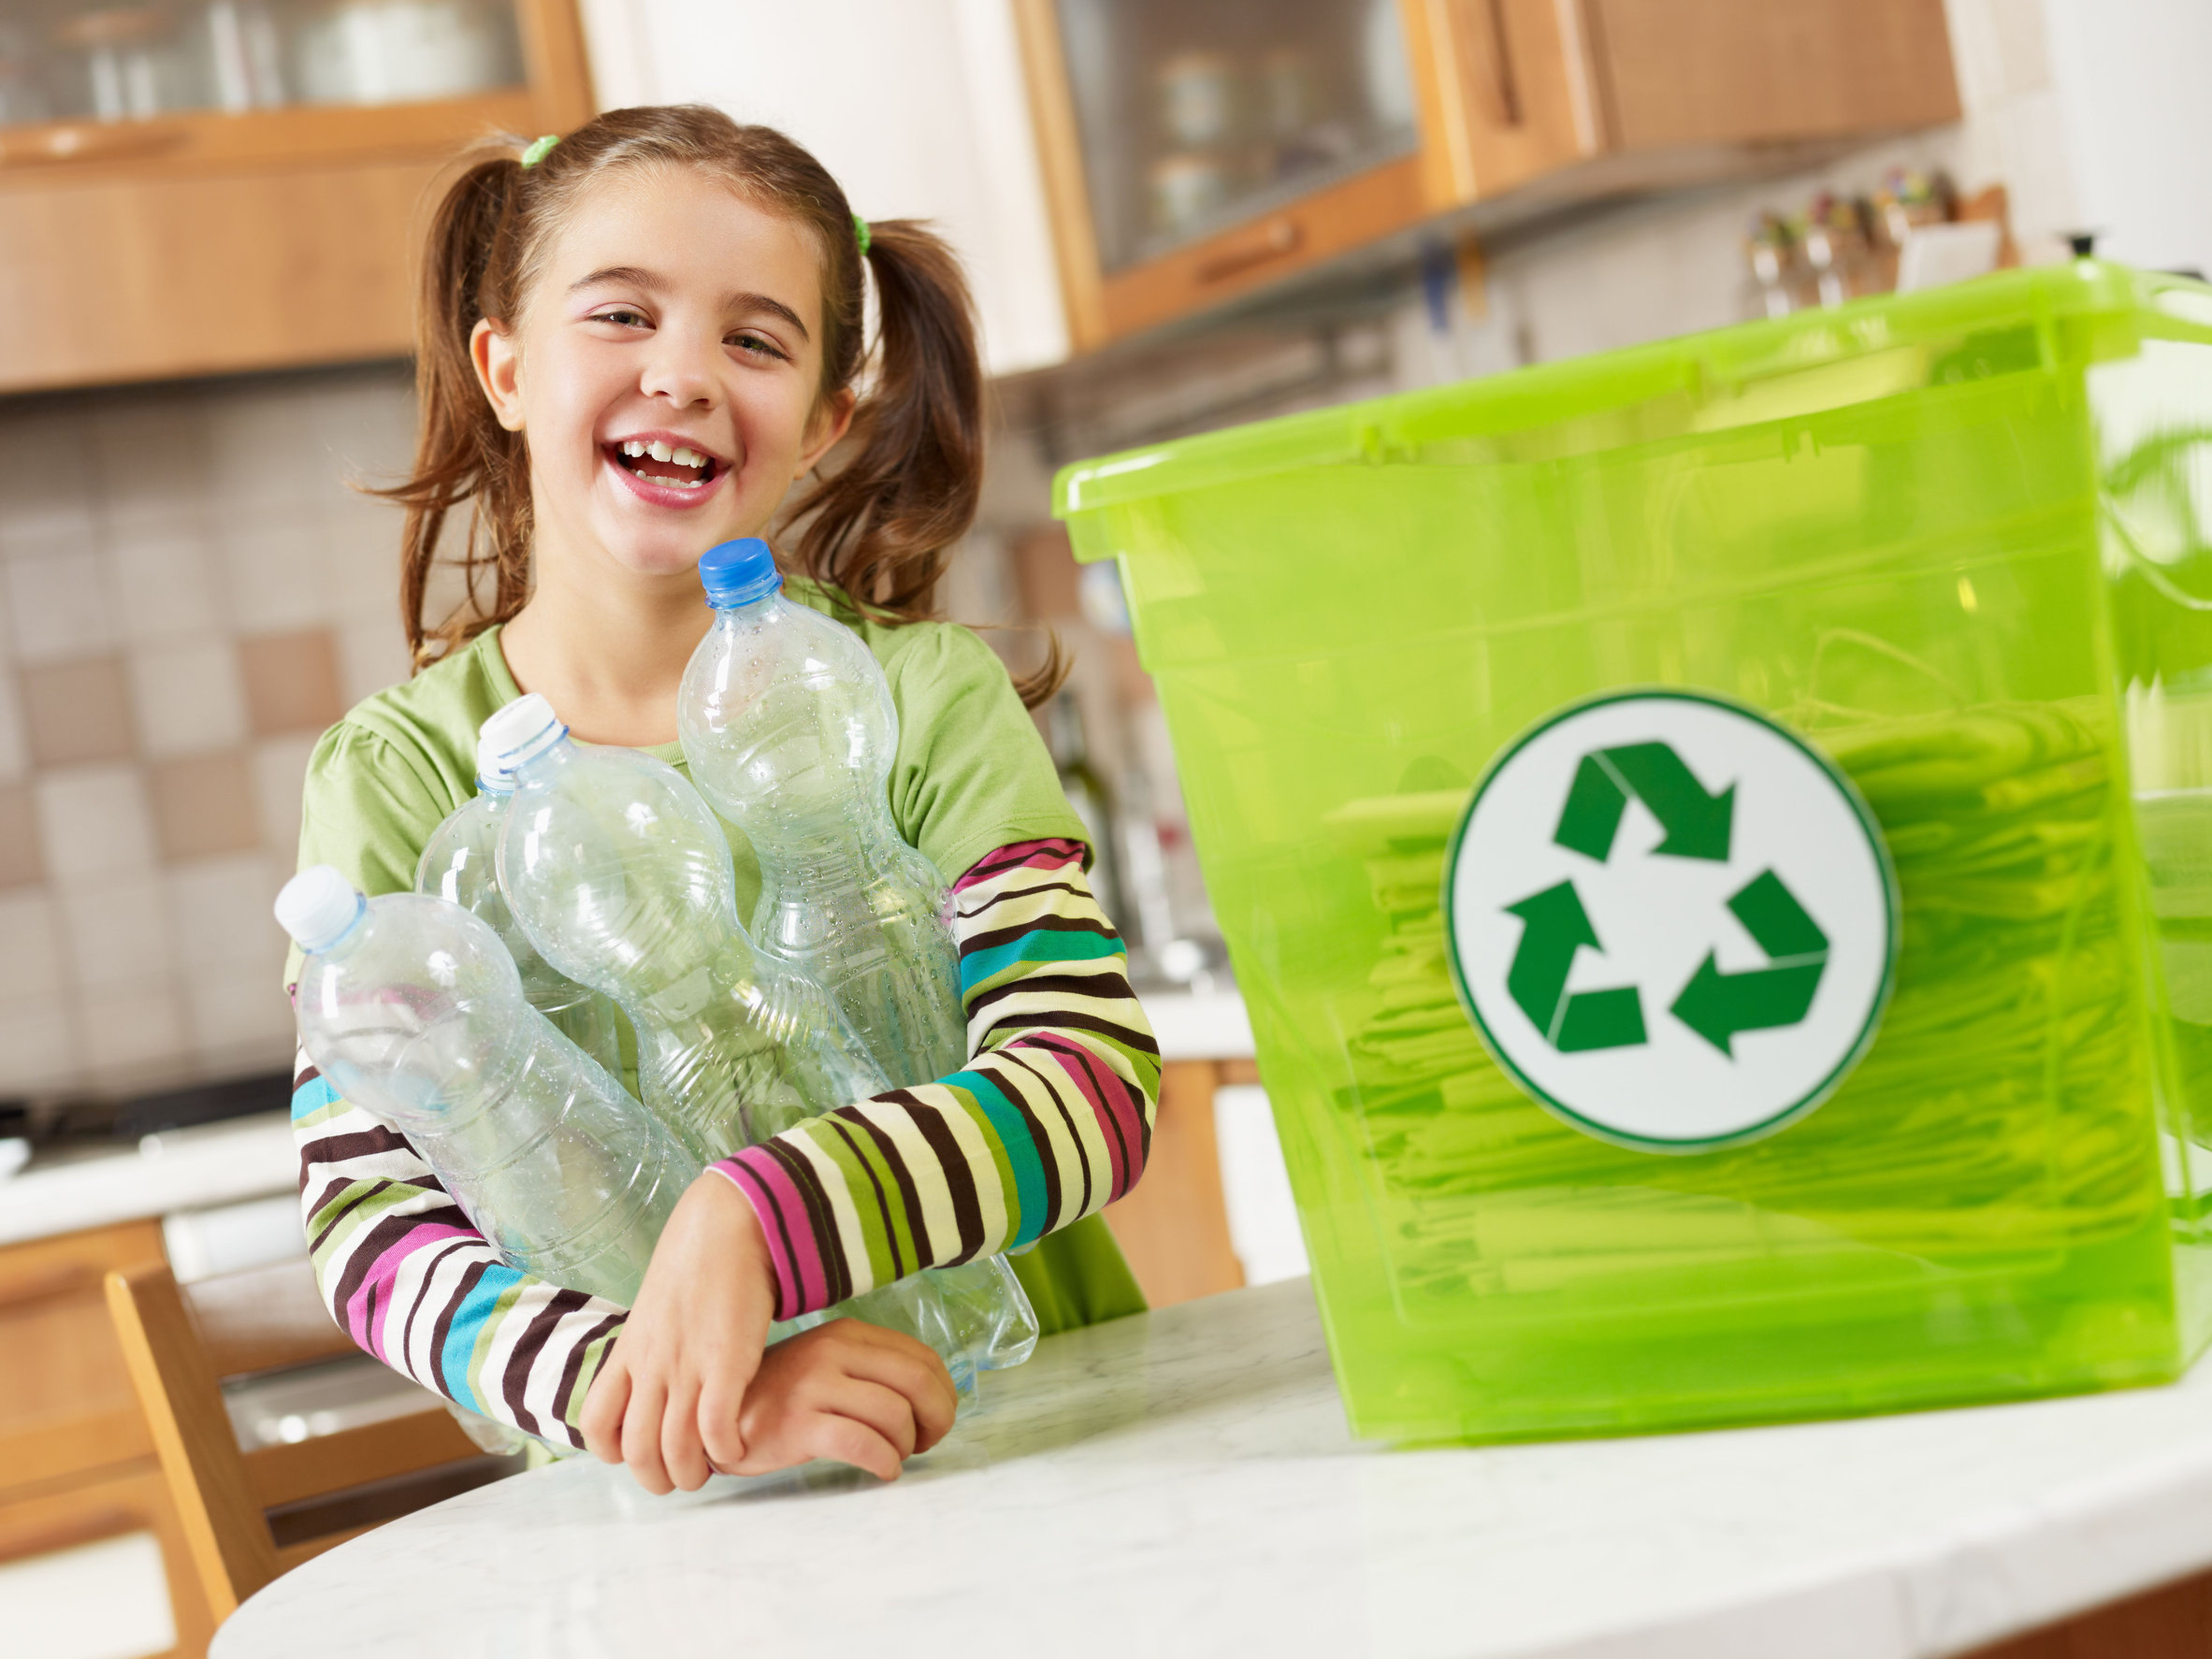 Reciclaje para niños: ventajas y cómo fomentarlo - Educalink